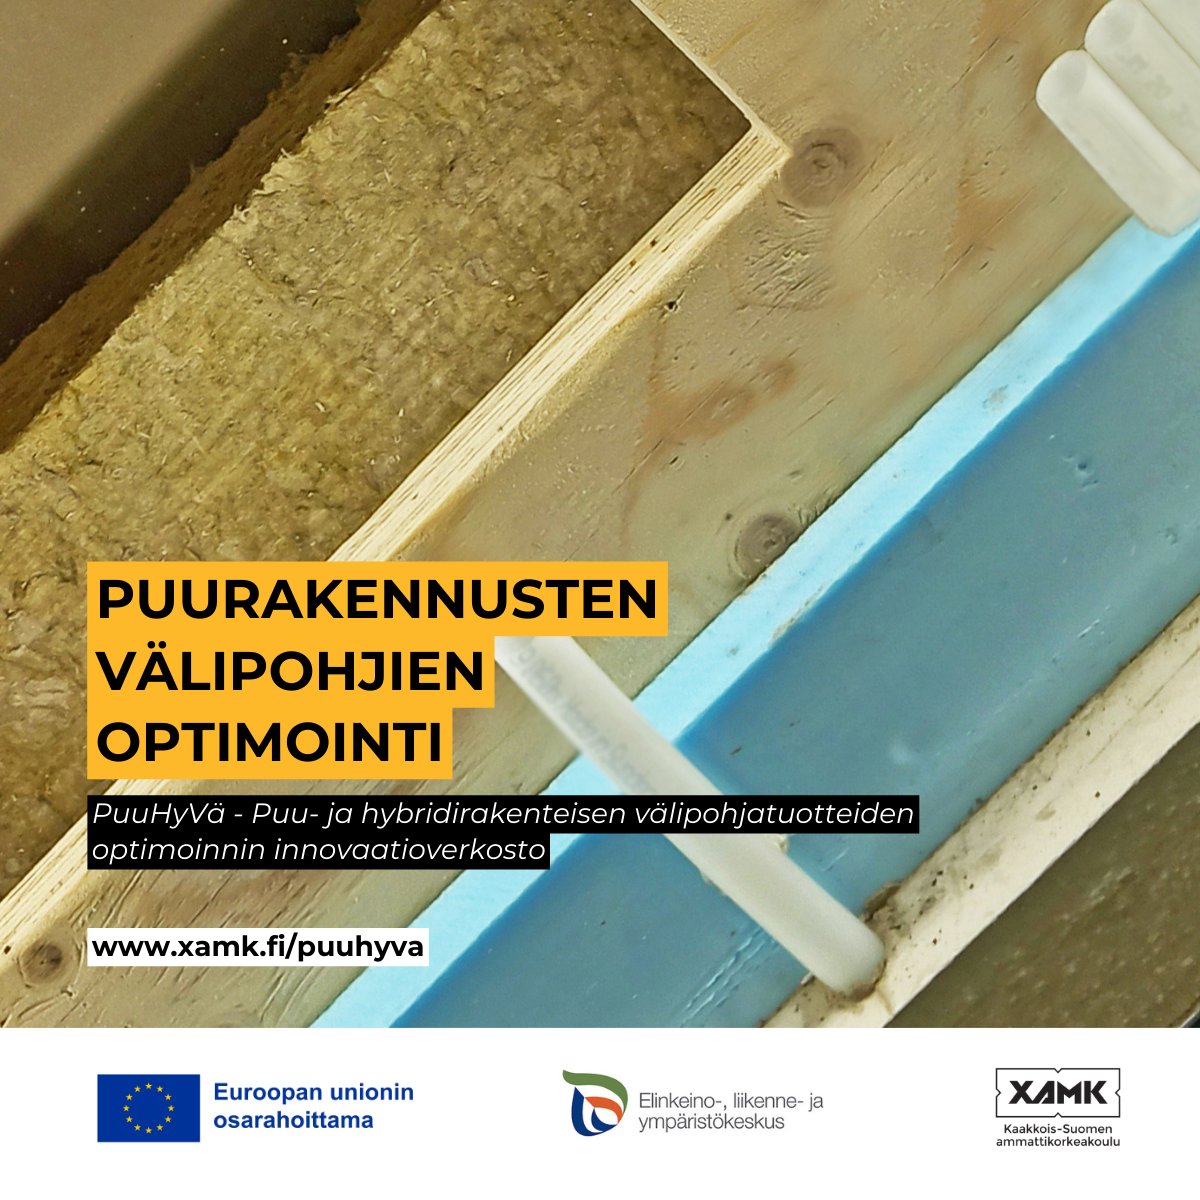 Hankekokonaisuudessa mukana Xamk, Tampereen yliopisto, Karelia Ammattikorkeakoulu ja Luonnonvarakeskus kukin omilla hankkeillaan.

@LukeFinland @Karelia_amk @TampereUni #innoverkostot #puuHyVa #puurakentaminen #woodbuilding #rakennesuunnittelu #EU #EUntuella #Savonlinna #Xamk